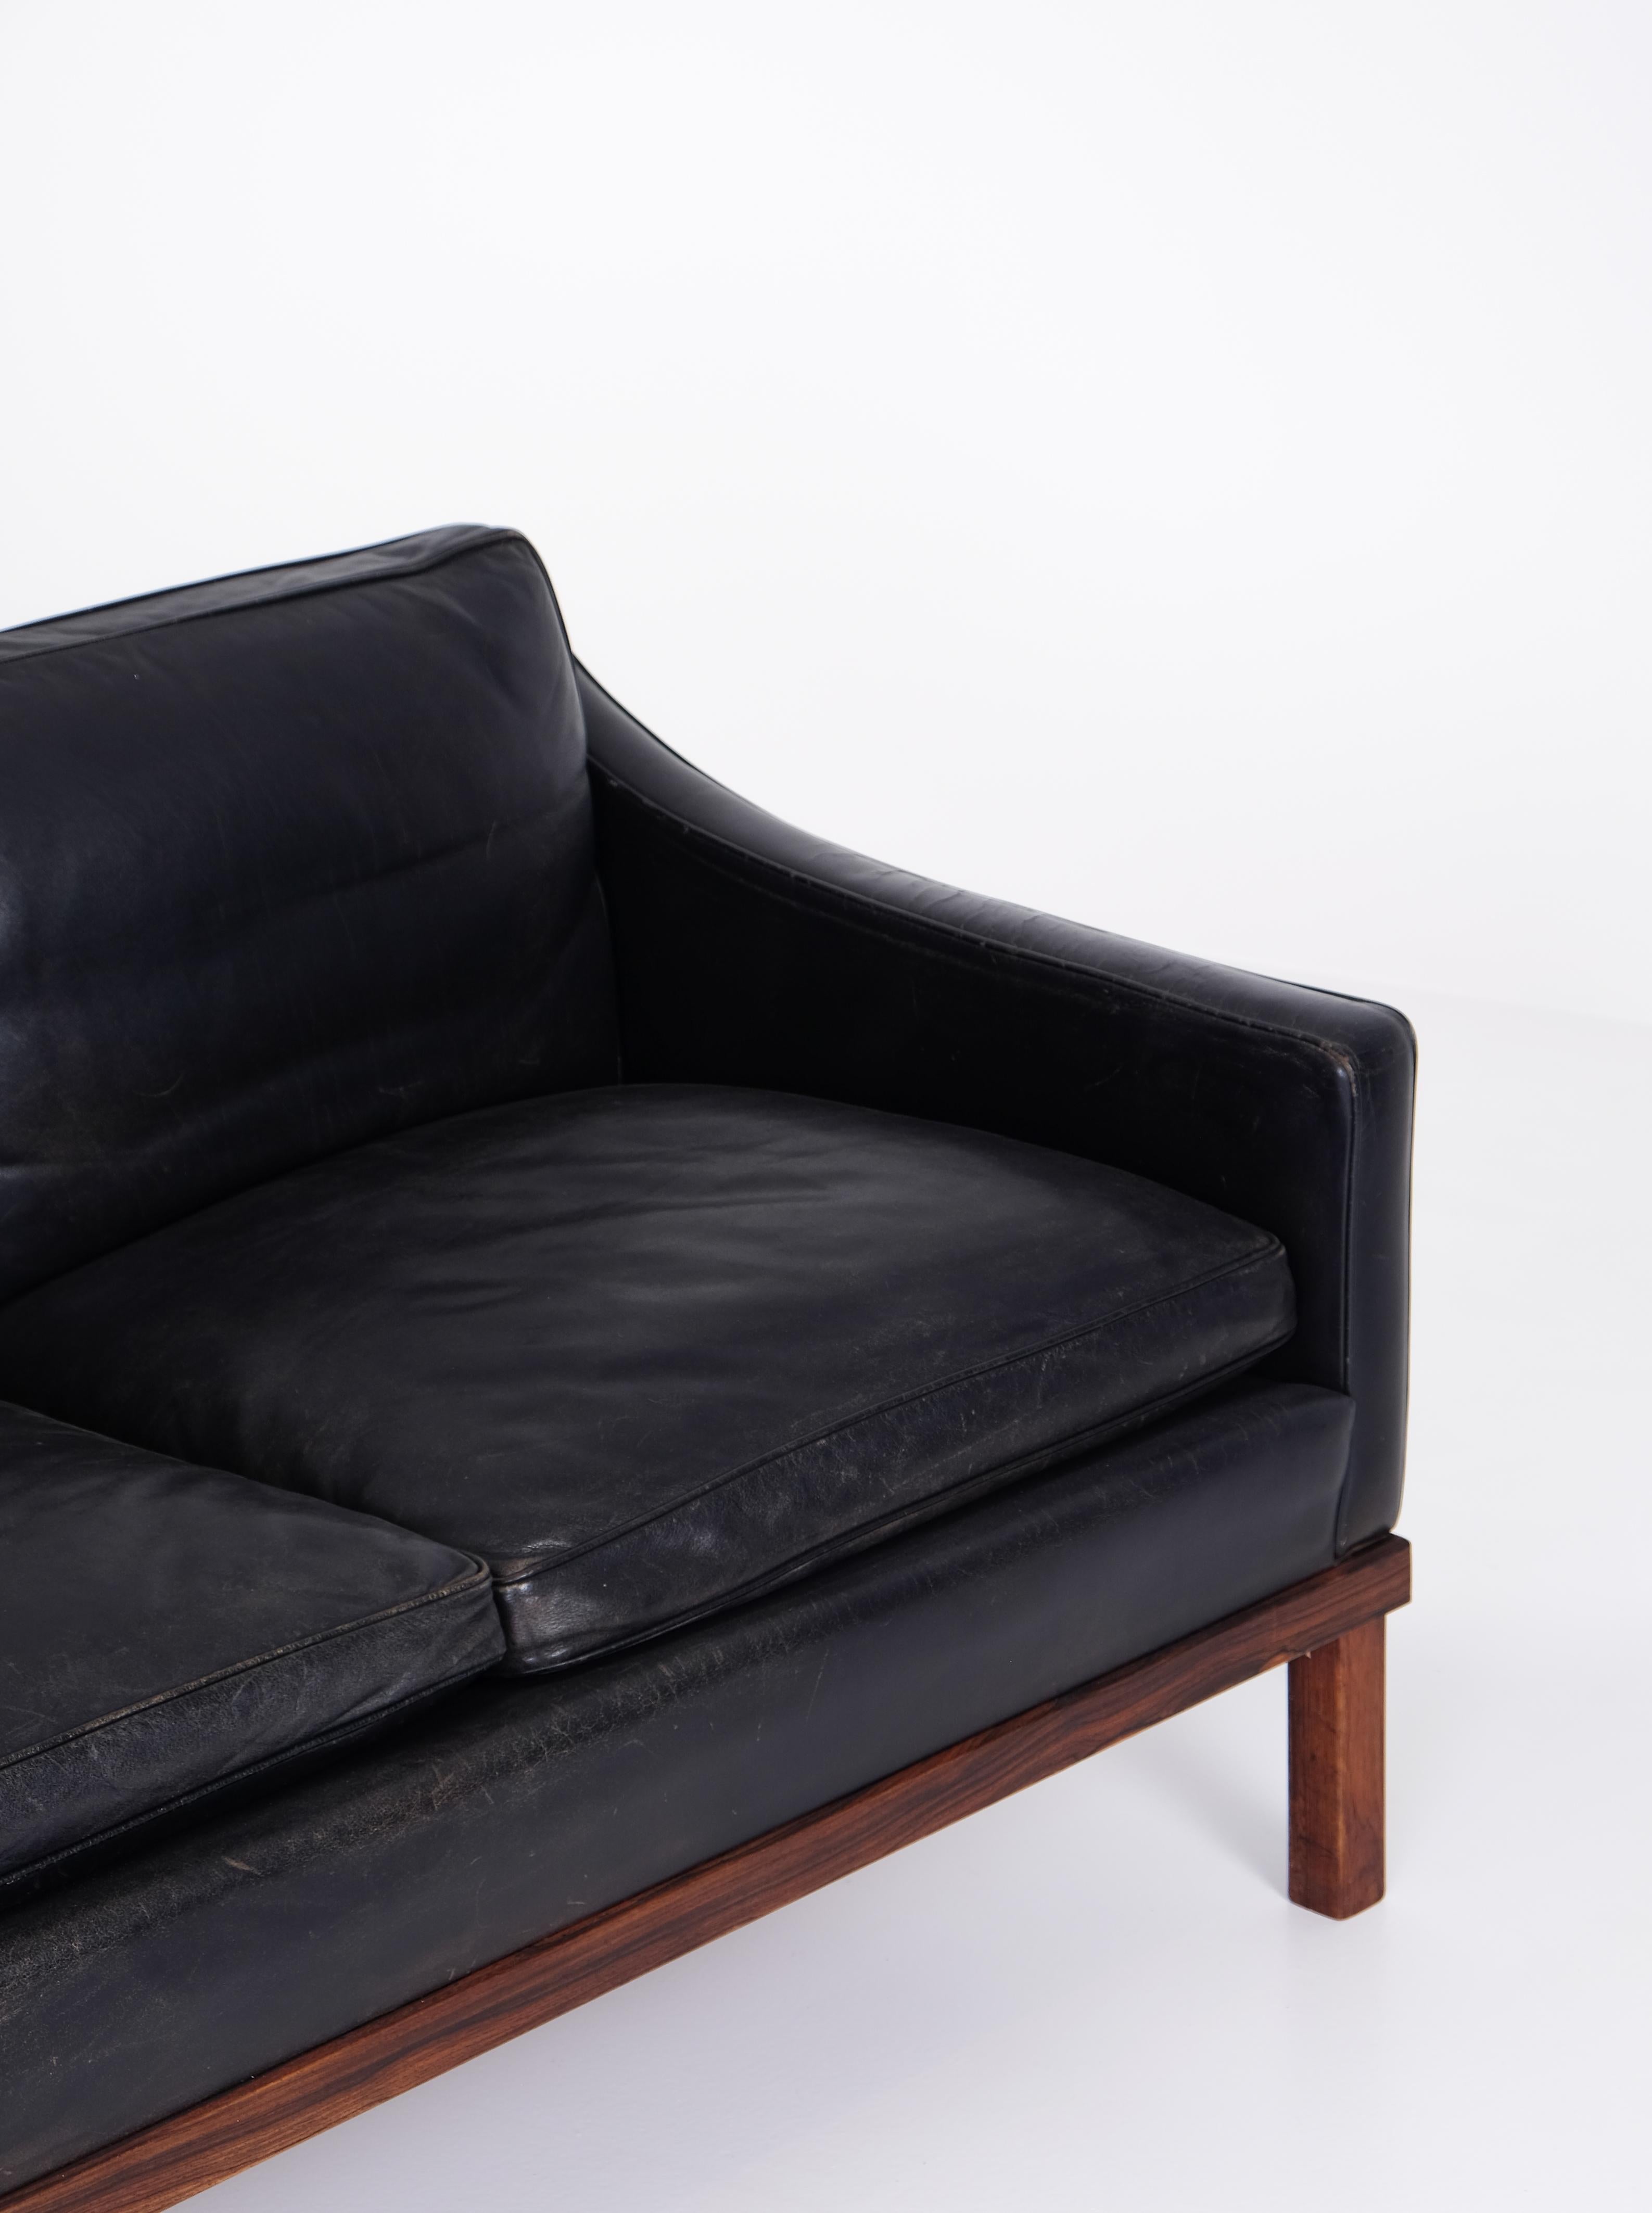 3-Sitzer Ib Kofod Larsen Sofa in original schwarzem Leder, sehr guter Zustand. Produziert von OPE in Schweden, 1960er Jahre.
Bitte beachten Sie: Das passende 4-Sitzer-Sofa ist ebenfalls erhältlich.